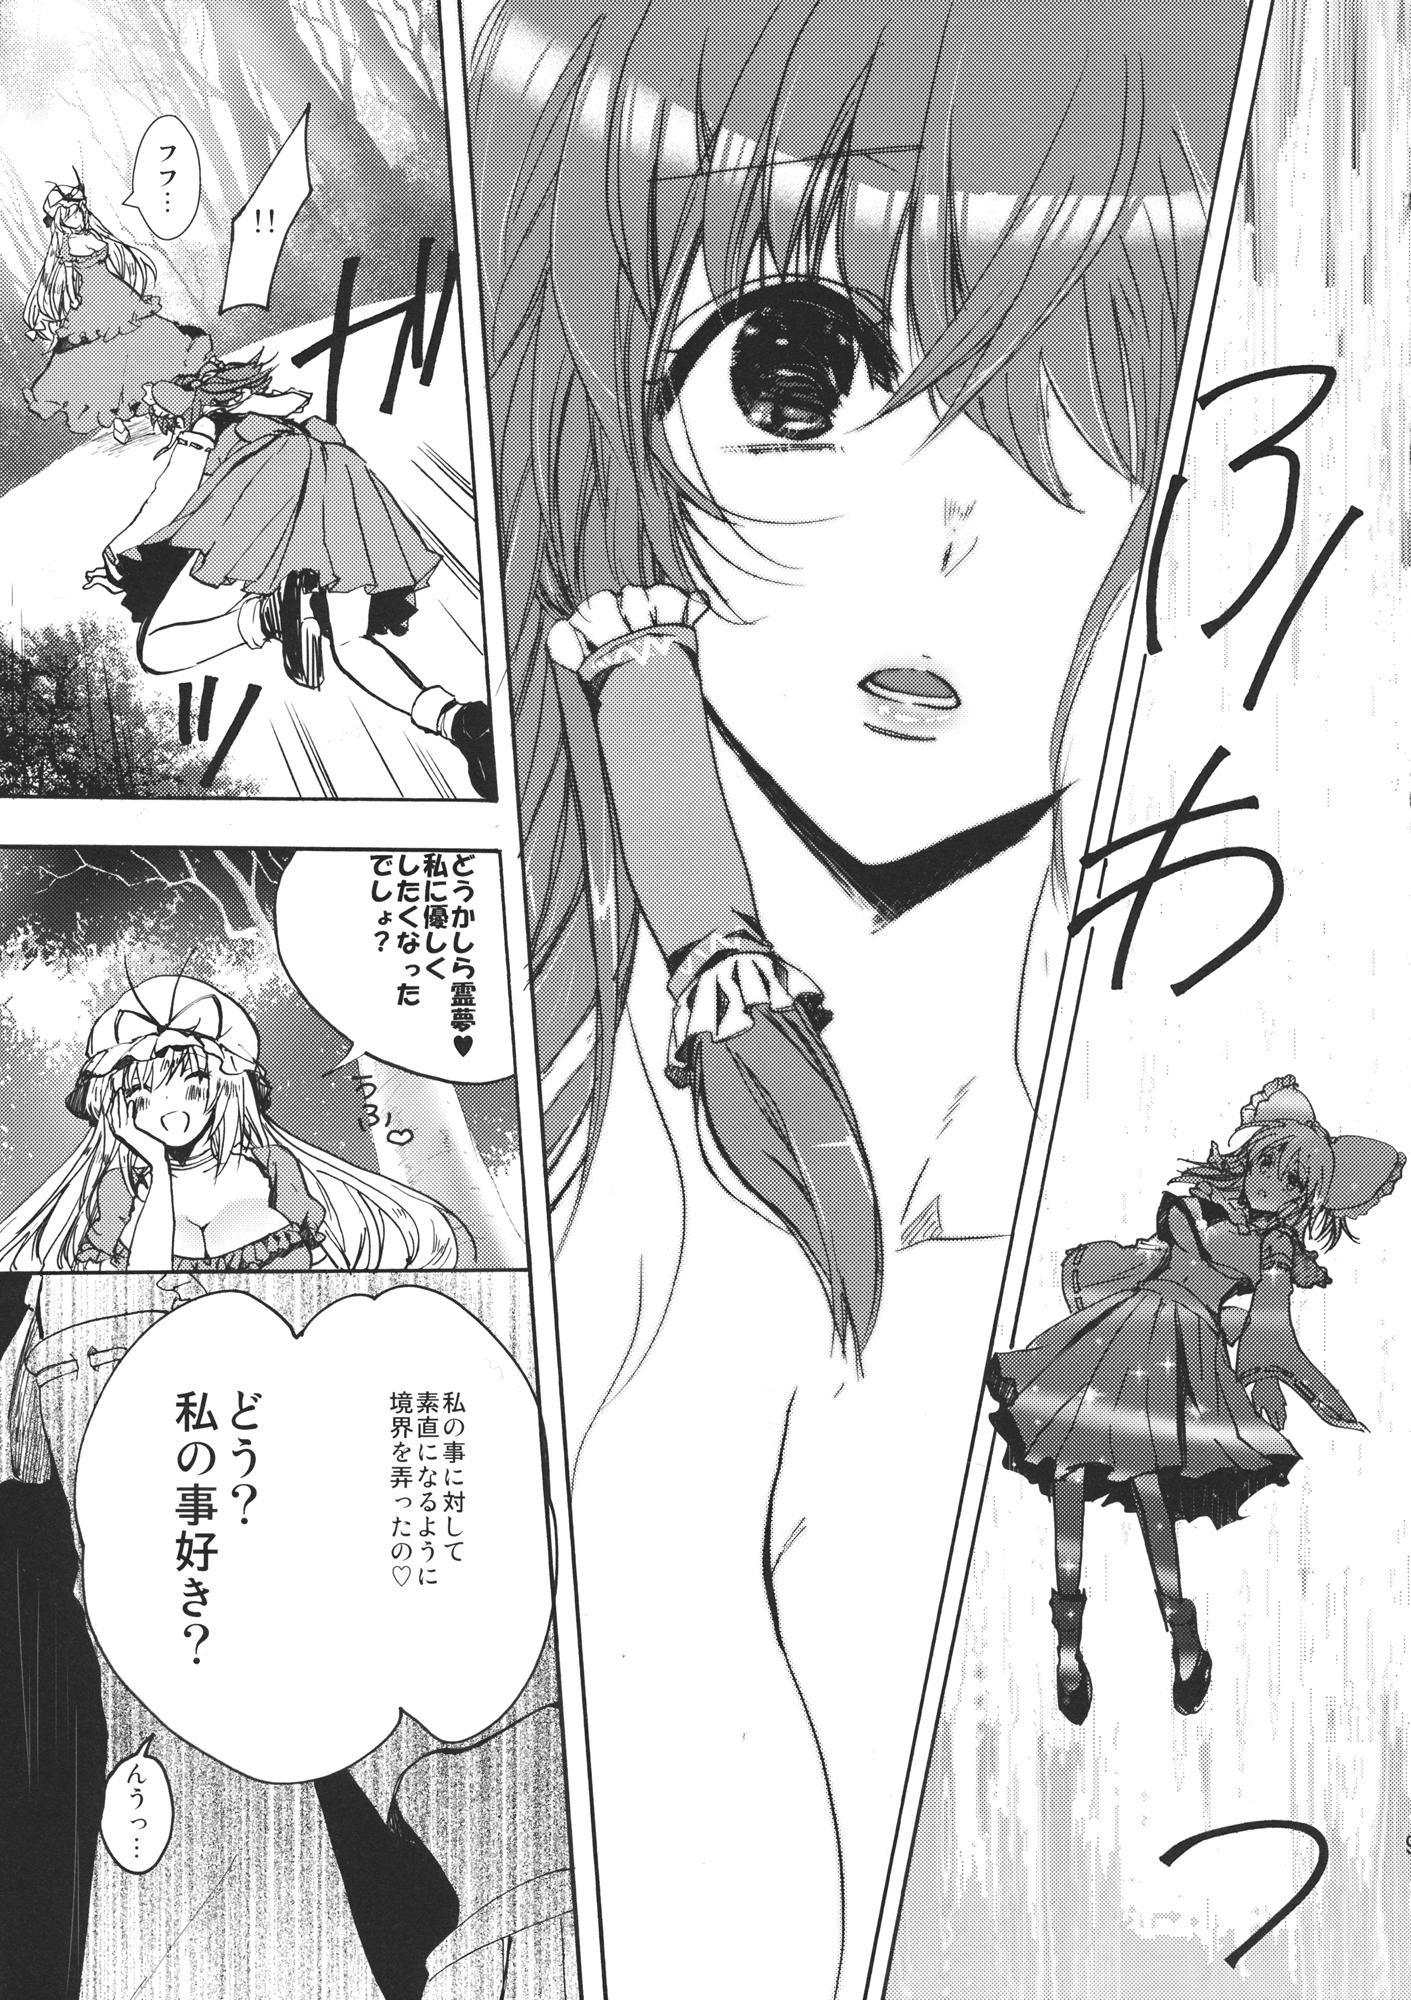 Hot Girl Pussy Watashi no Reimu ga Konnani Tsumetai Hazu ga nai - Touhou project Amigos - Page 8